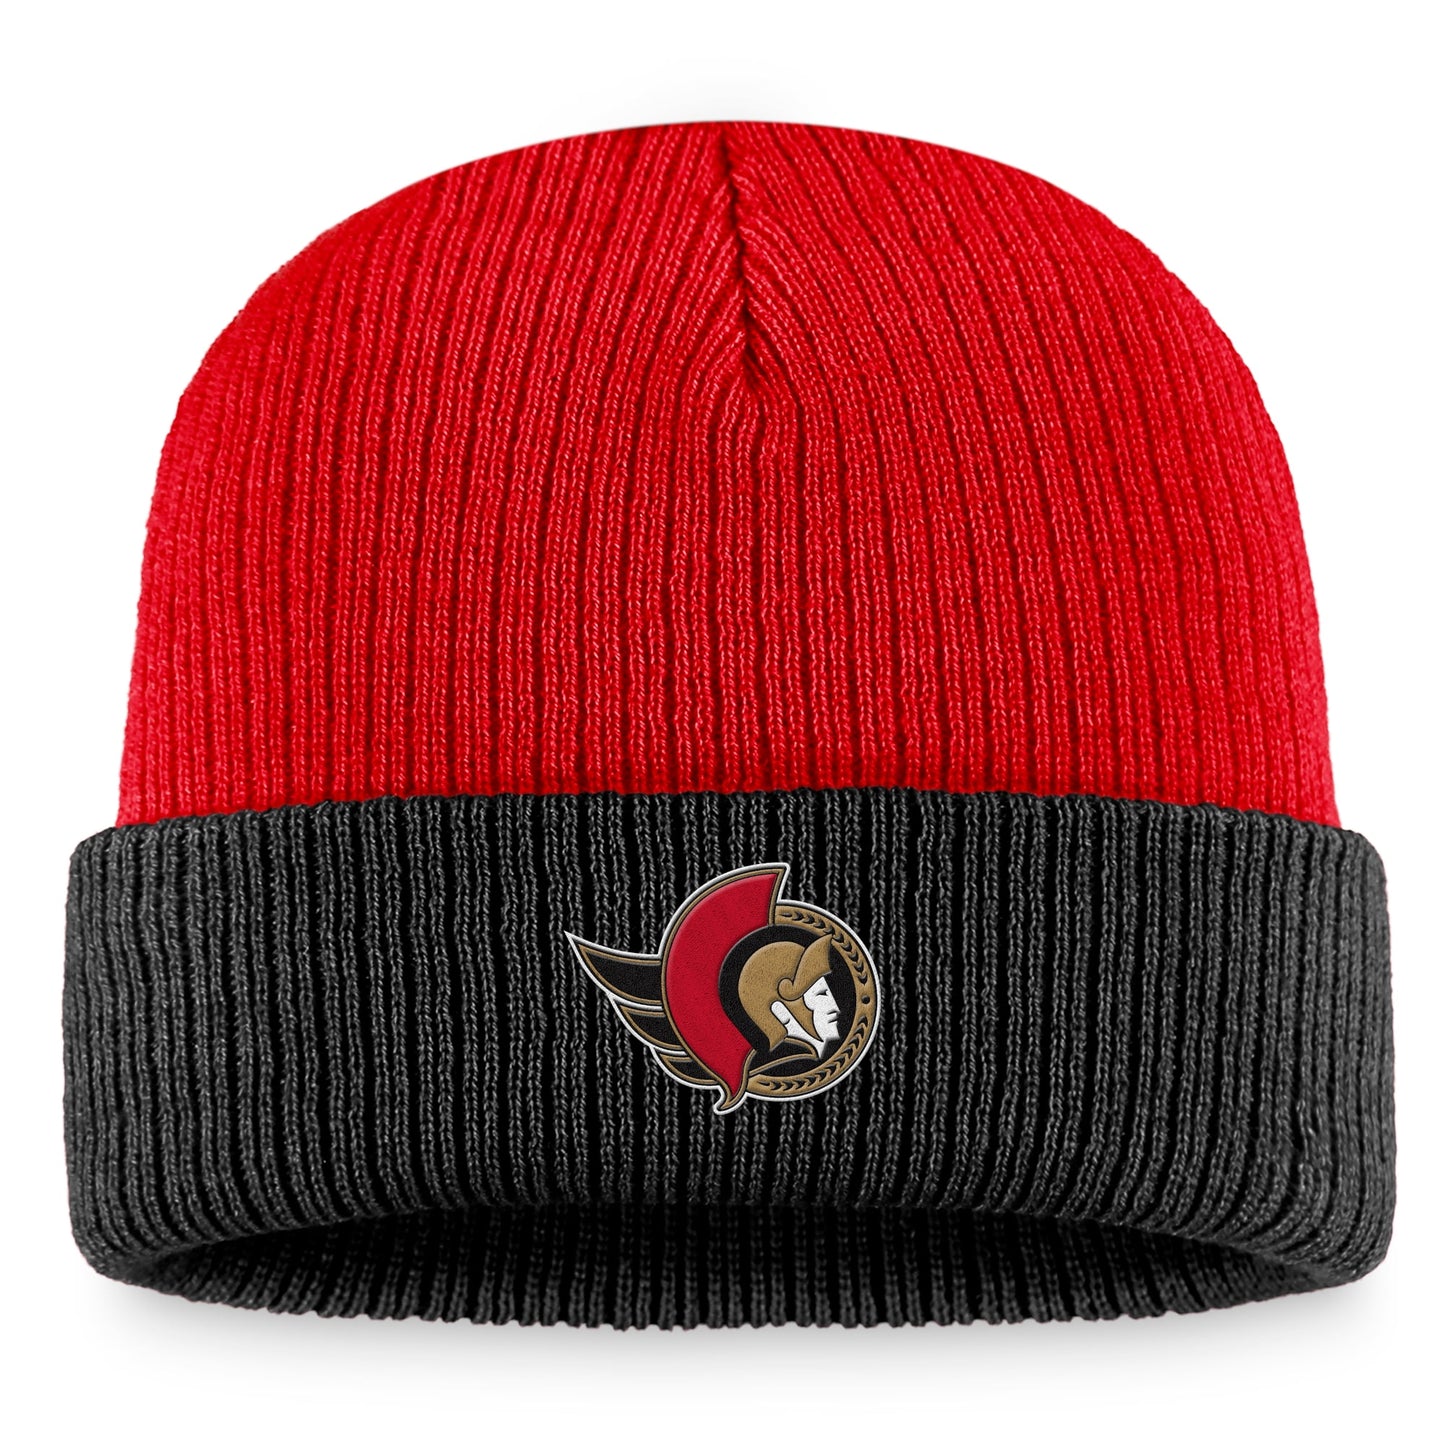 Men's Fanatics Branded  Red/Black Ottawa Senators Heritage Vintage Cuffed Knit Hat - OSFA